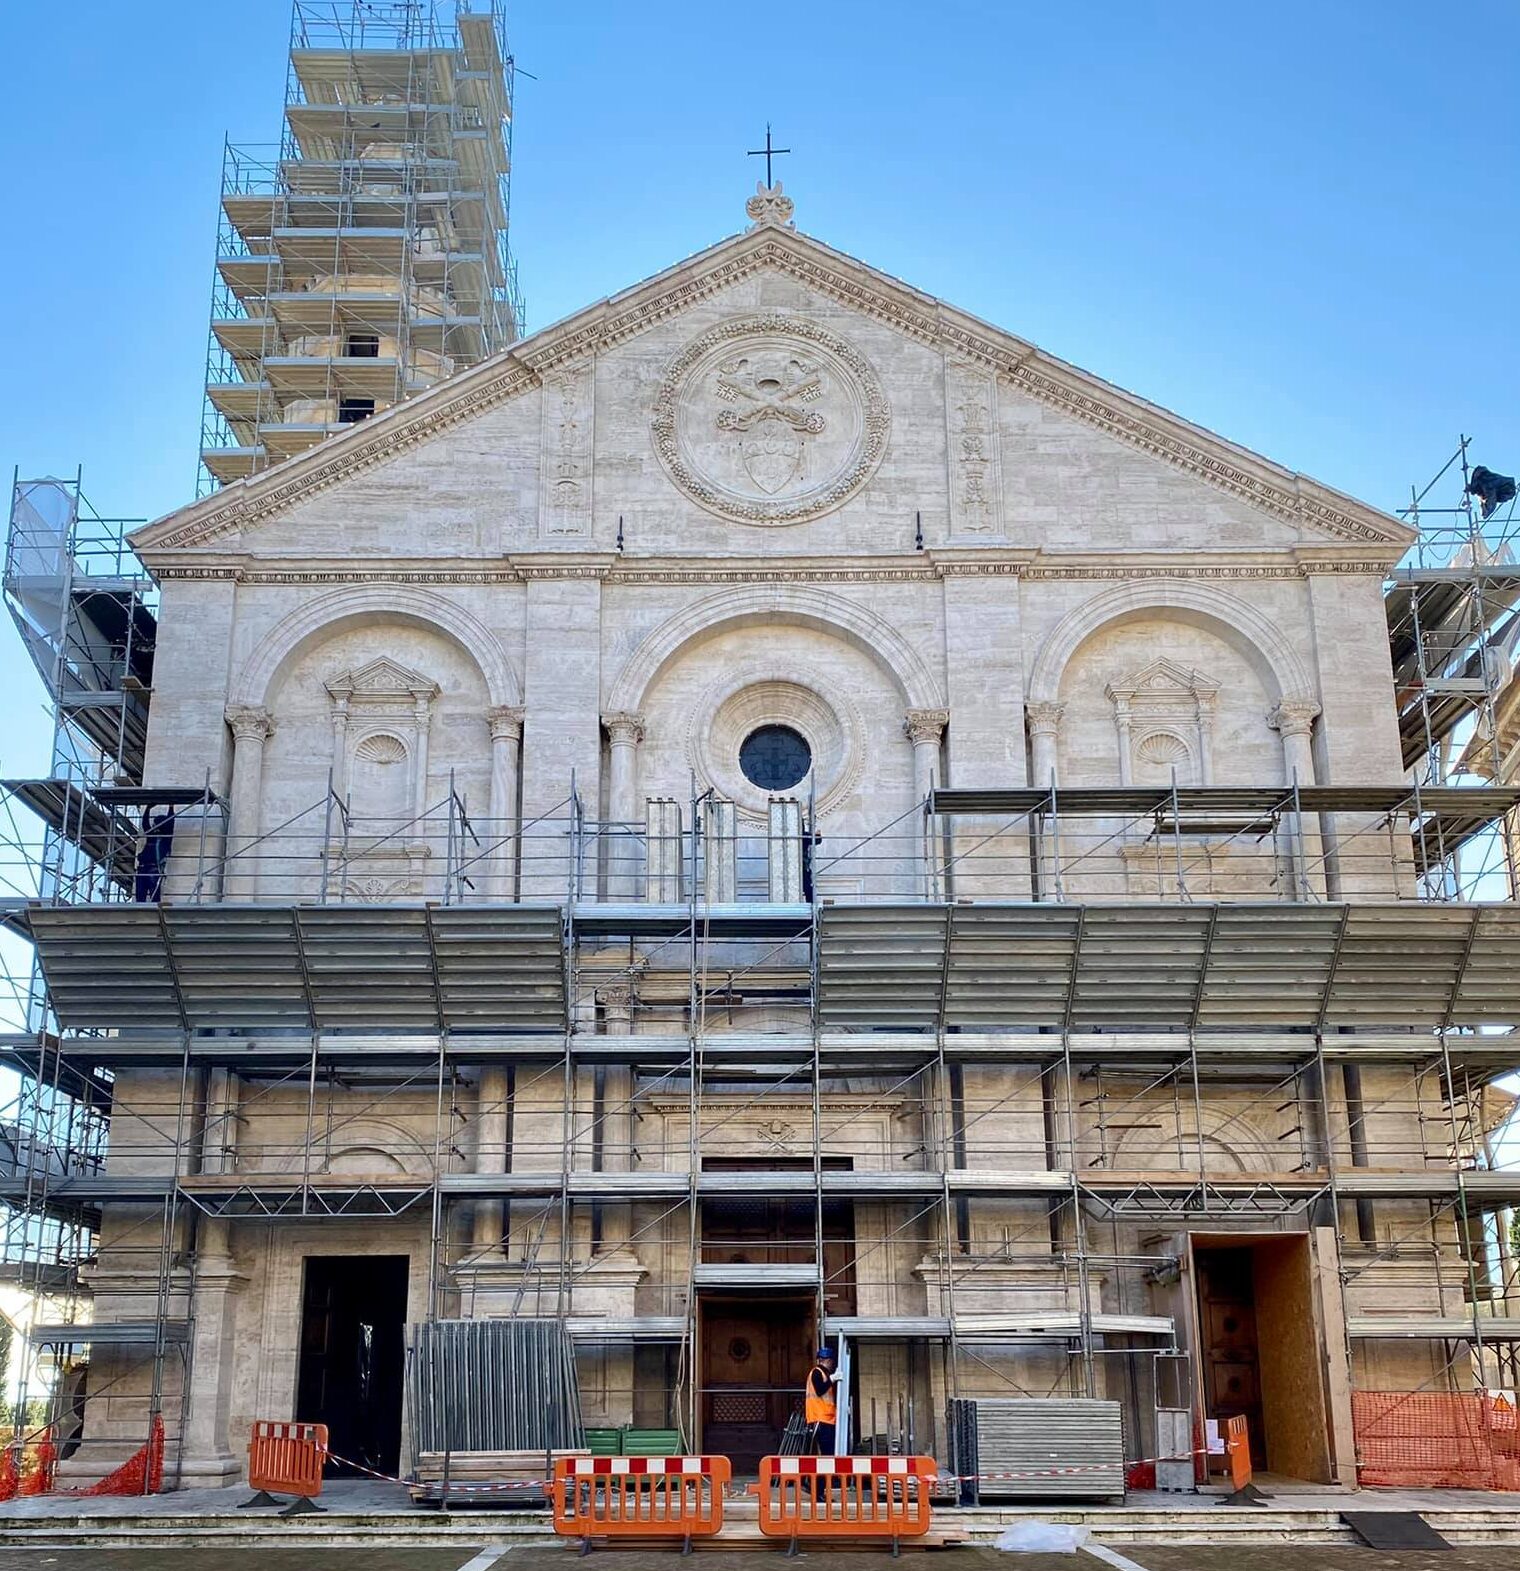 Torna a splendere la facciata del Duomo di Pienza. Via le impalcature, i lavori proseguono all’interno della Cattedrale